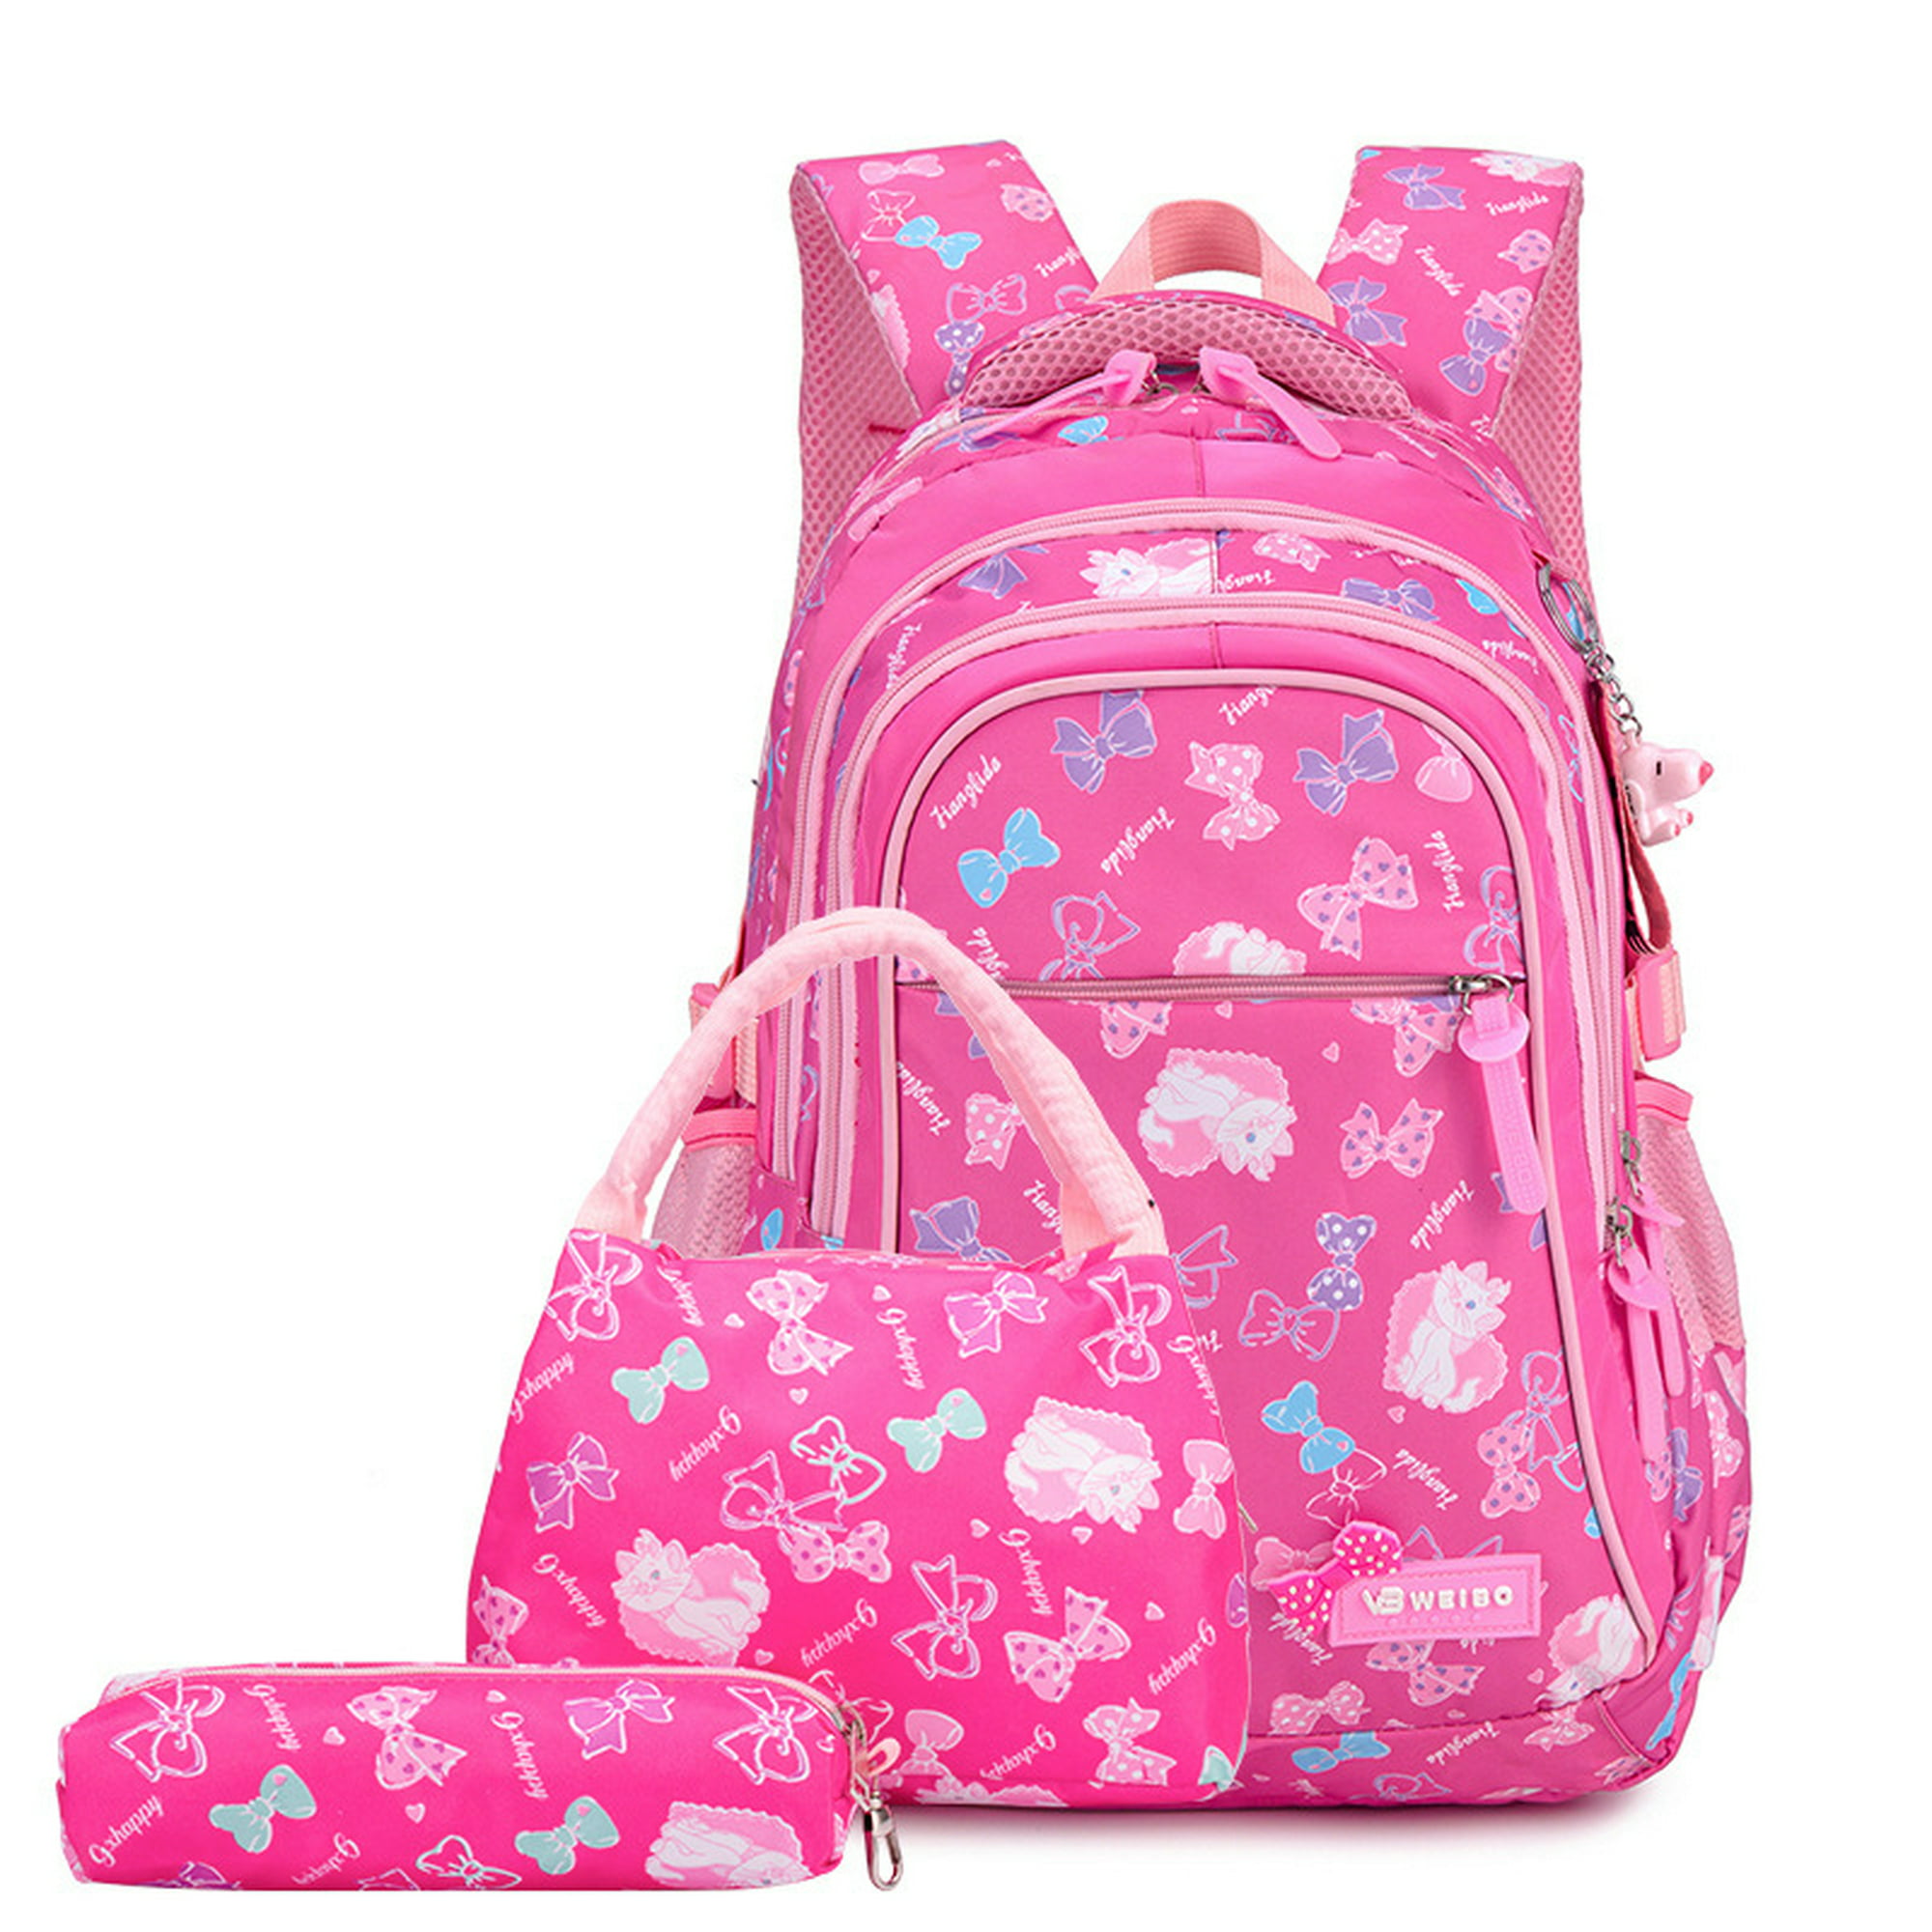  Disney Lilo And Stitch - Juego de mochila para niñas  Juego de  mochila de 4 piezas para niños con bolsa escolar, estuche para lápices,  bolsa de almuerzo y botella de